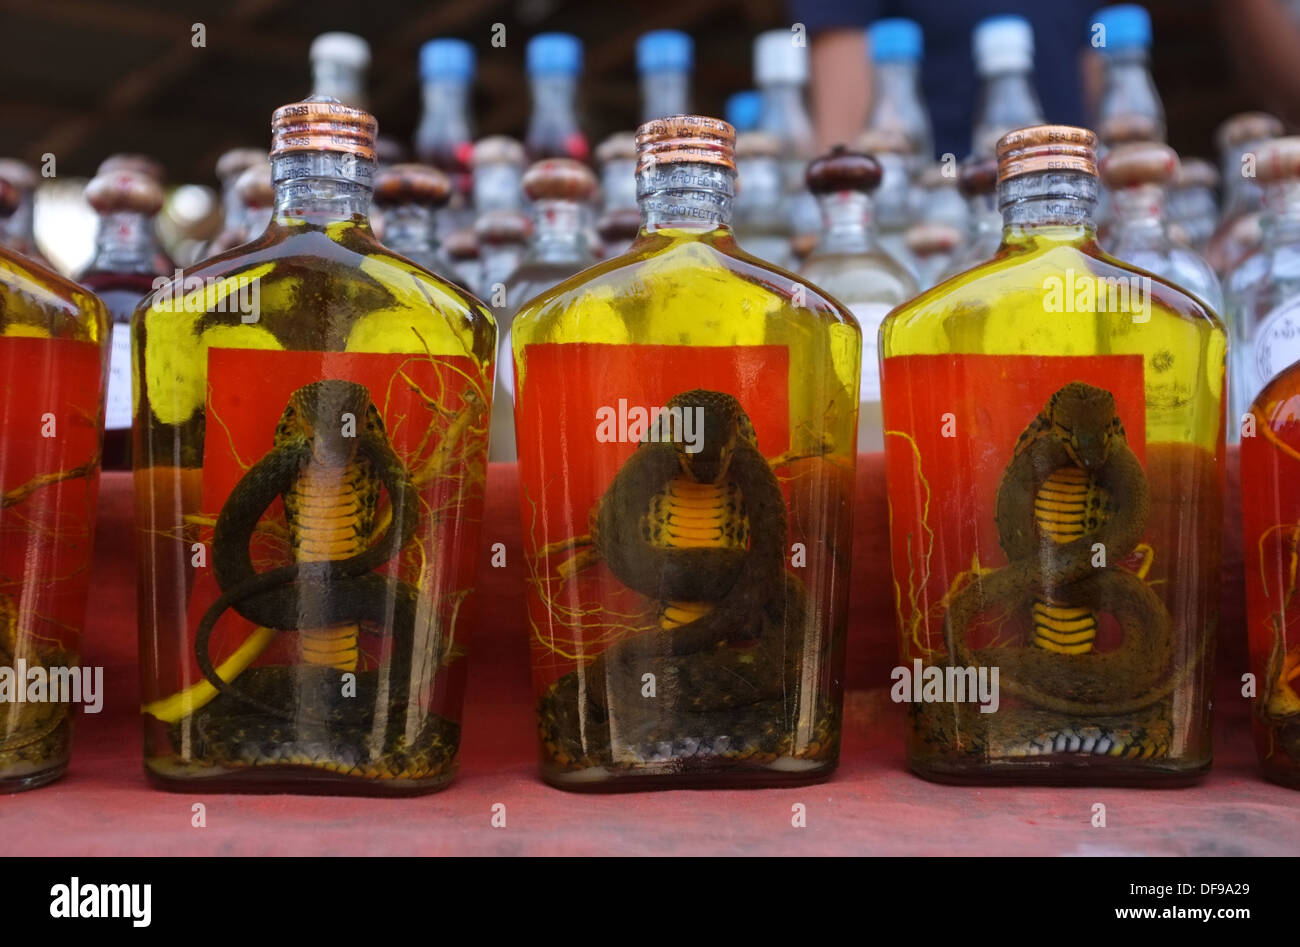 Snake whiskey immagini e fotografie stock ad alta risoluzione - Alamy